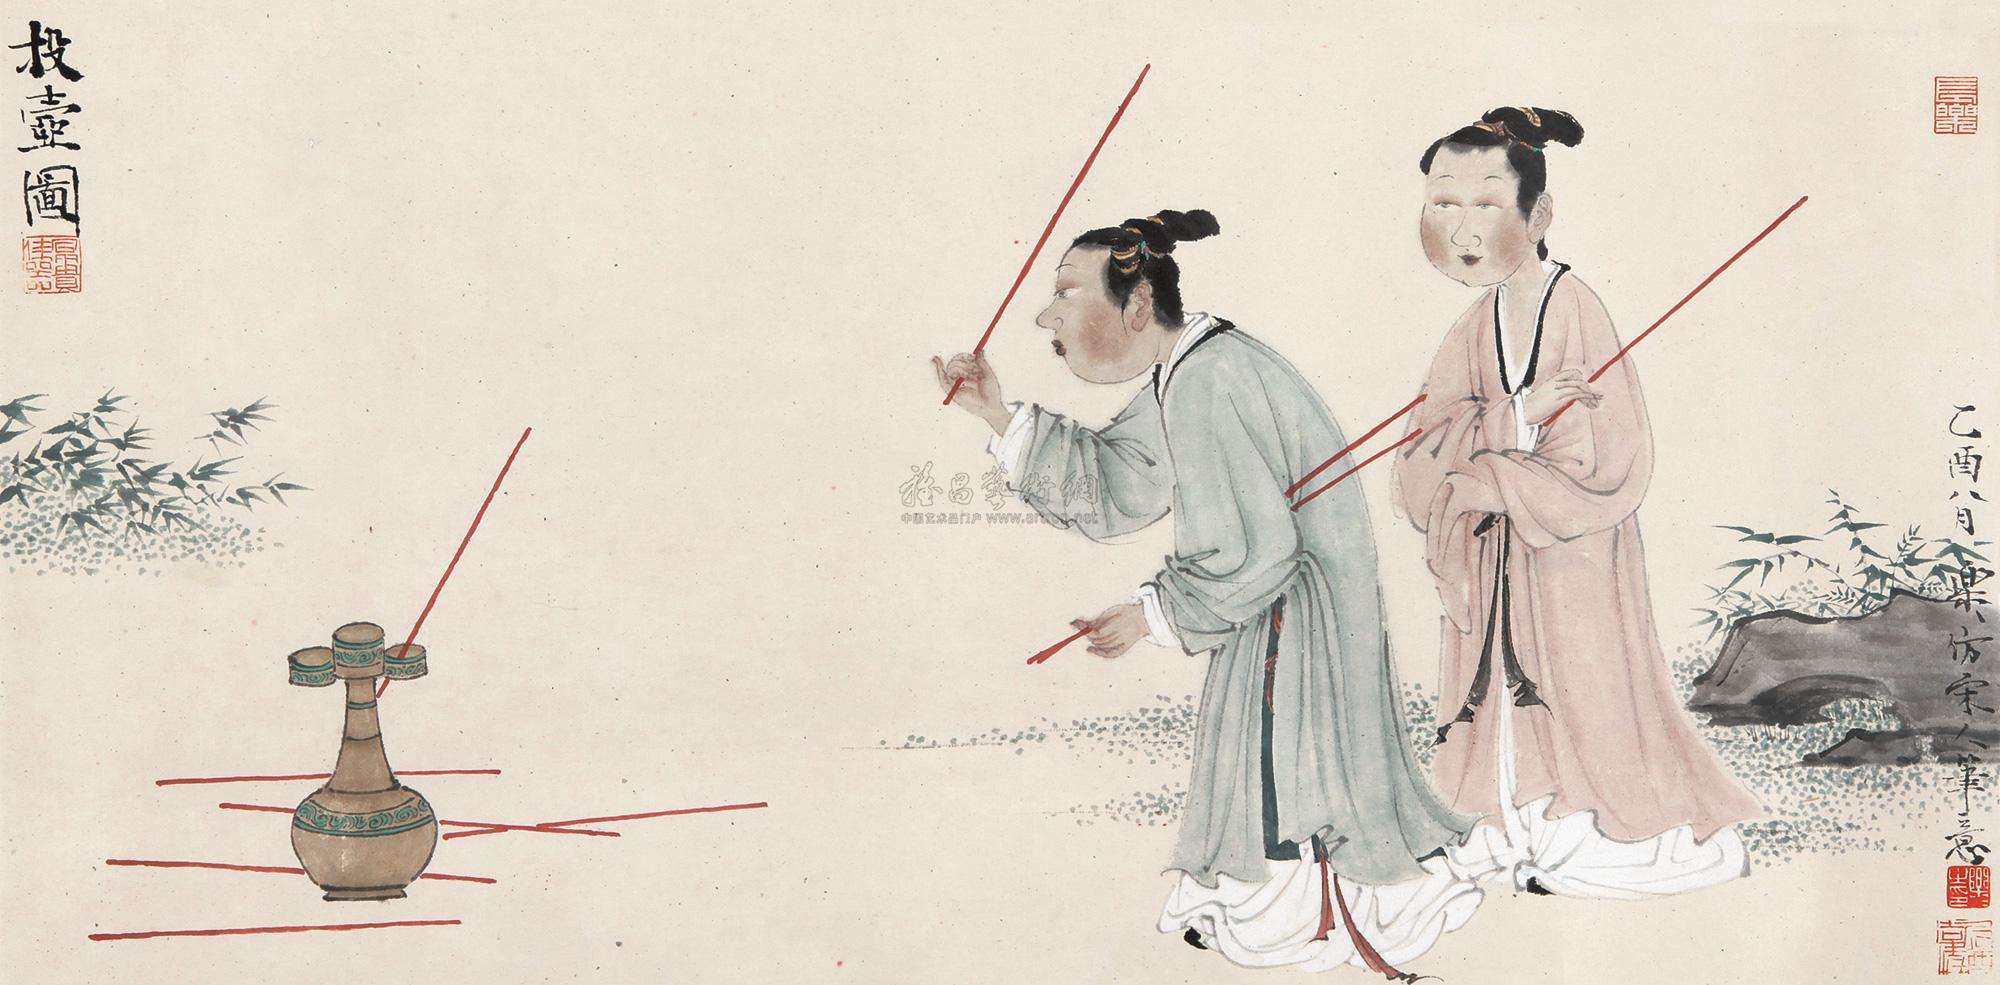 延续千年的中国传统礼仪和宴饮游戏“投壶”